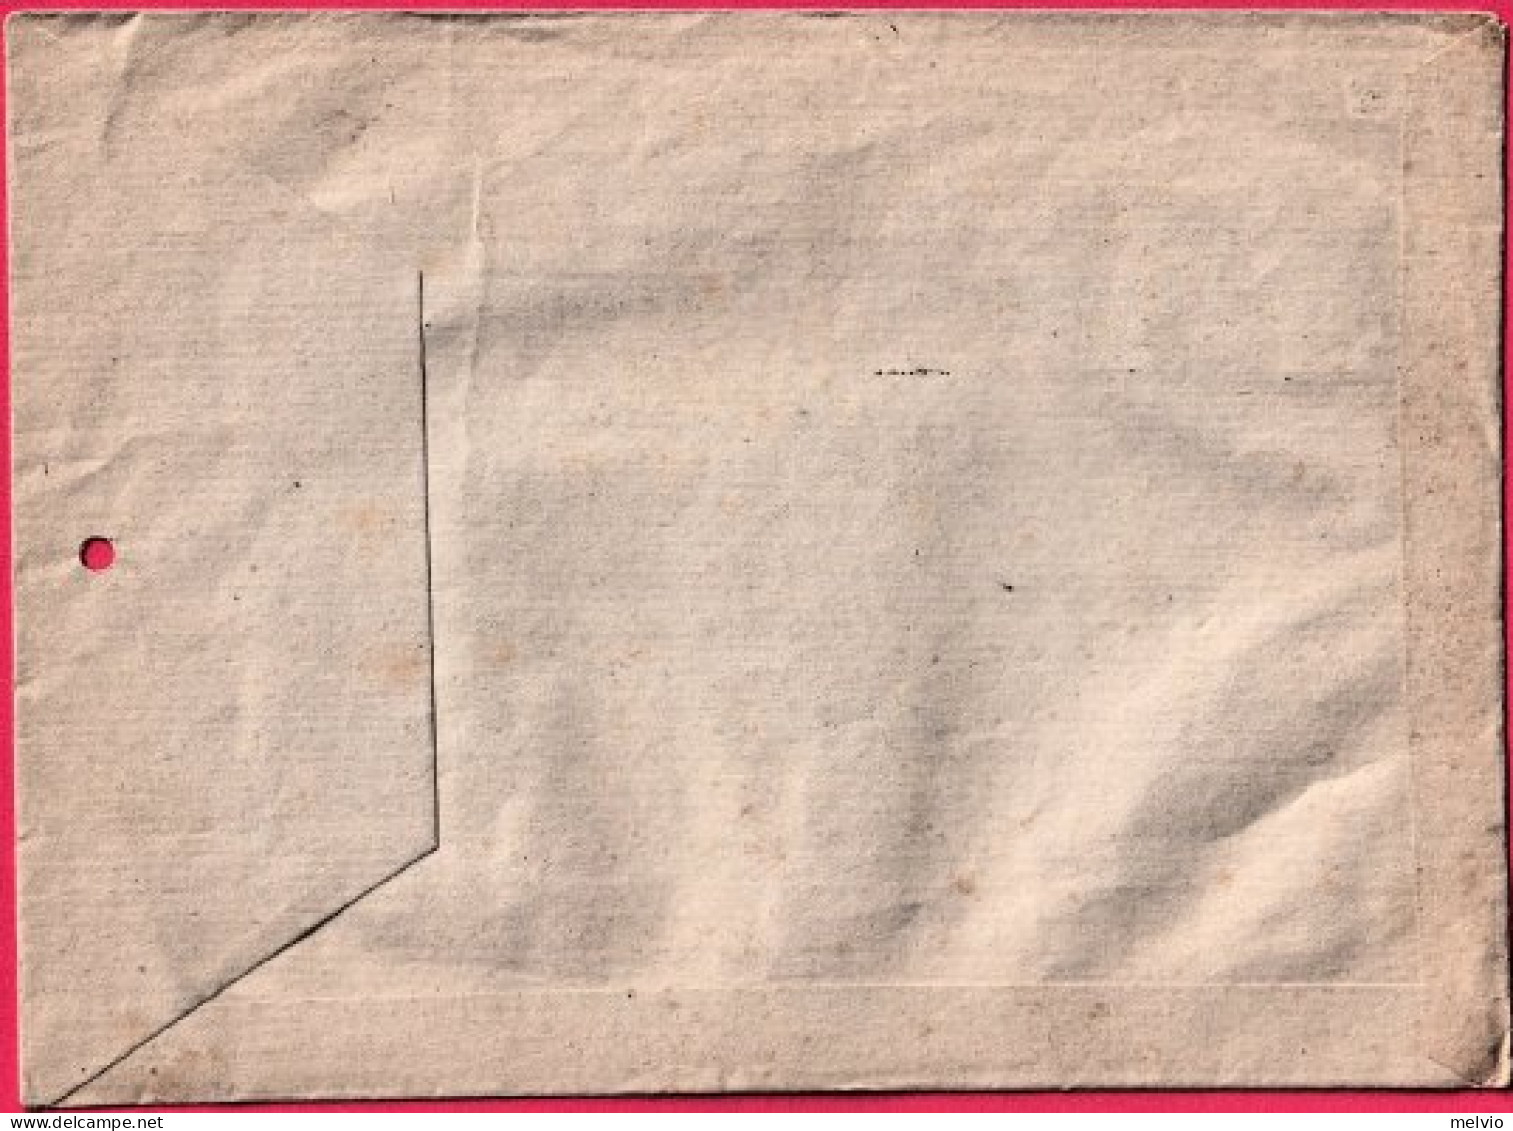 1944-manoscritti Raccomandati Busta Affrancata Con Coppia Recapito Autorizzato 1 - Storia Postale